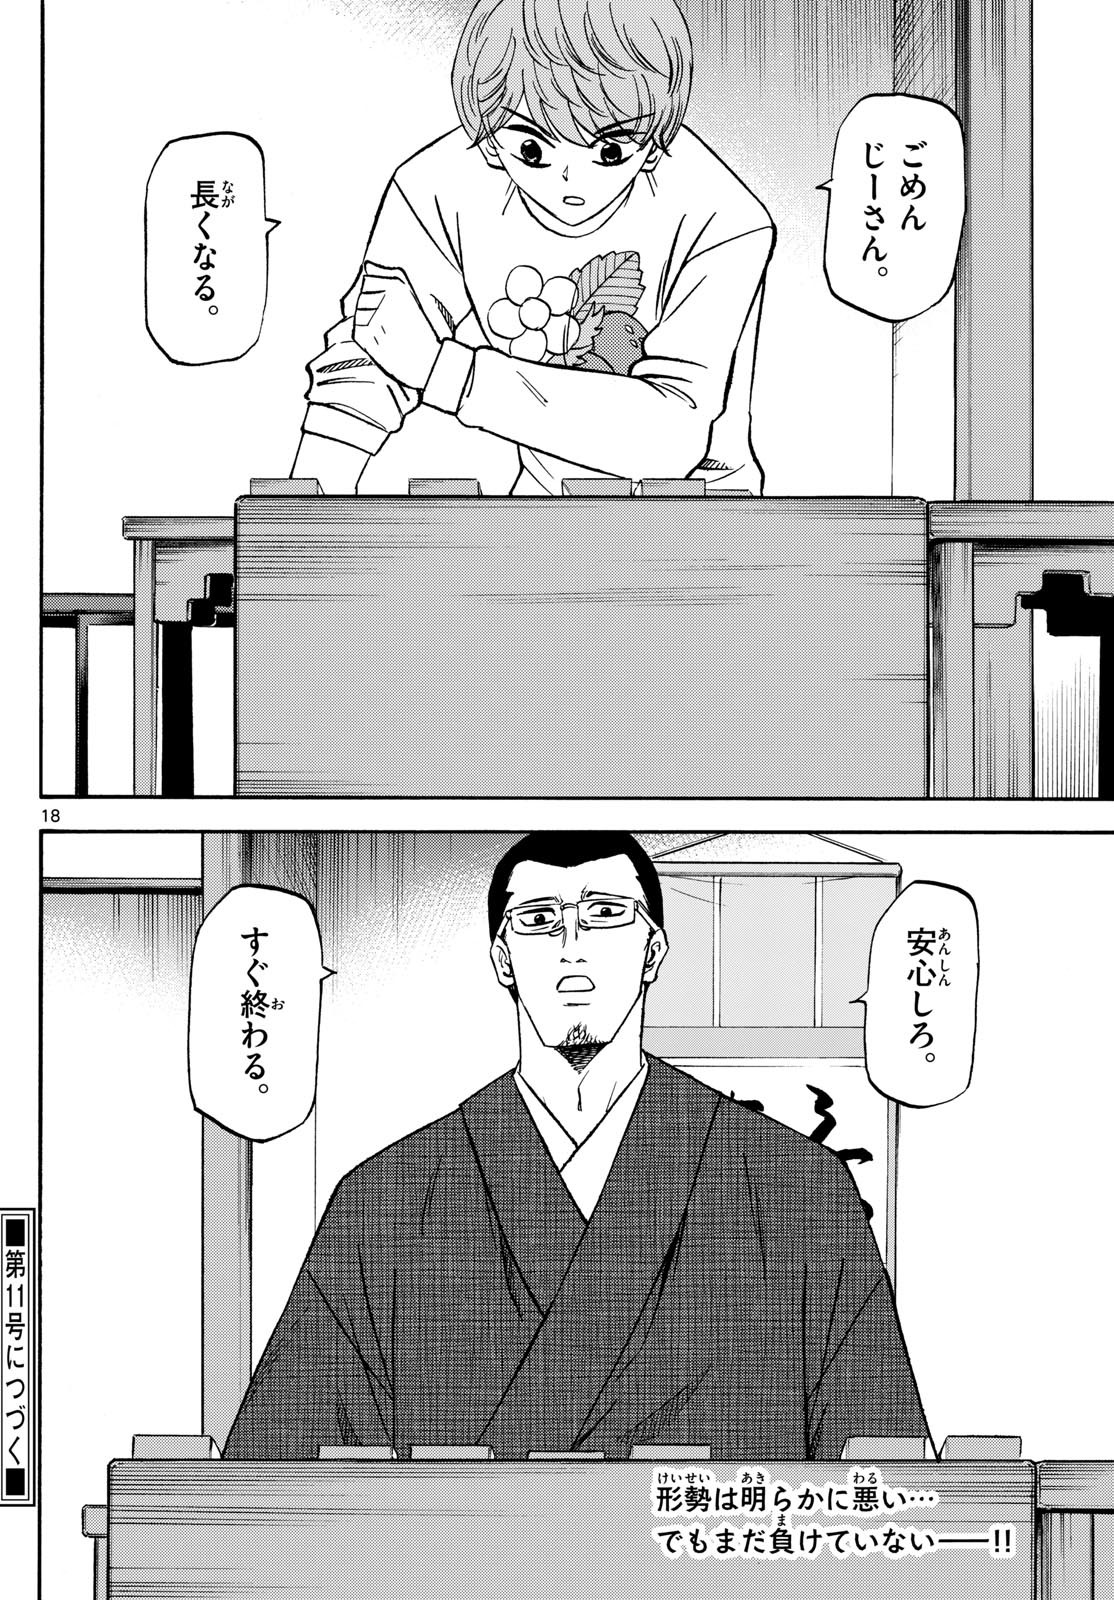 Ryu-to-Ichigo - Chapter 177 - Page 18